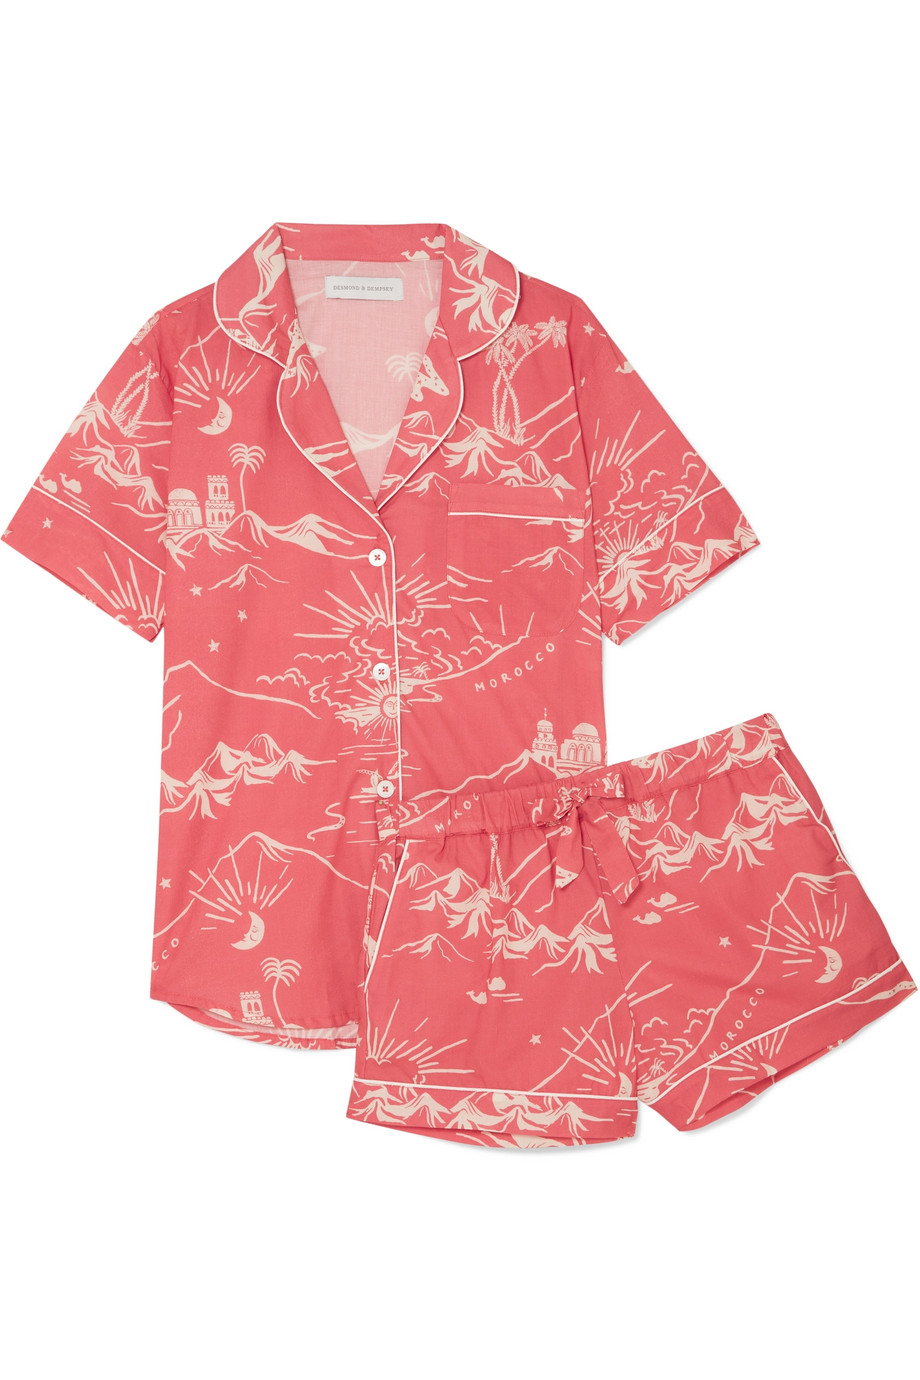 Pink Morocco Printed Cotton Pajamas Short Sleeve Shorts